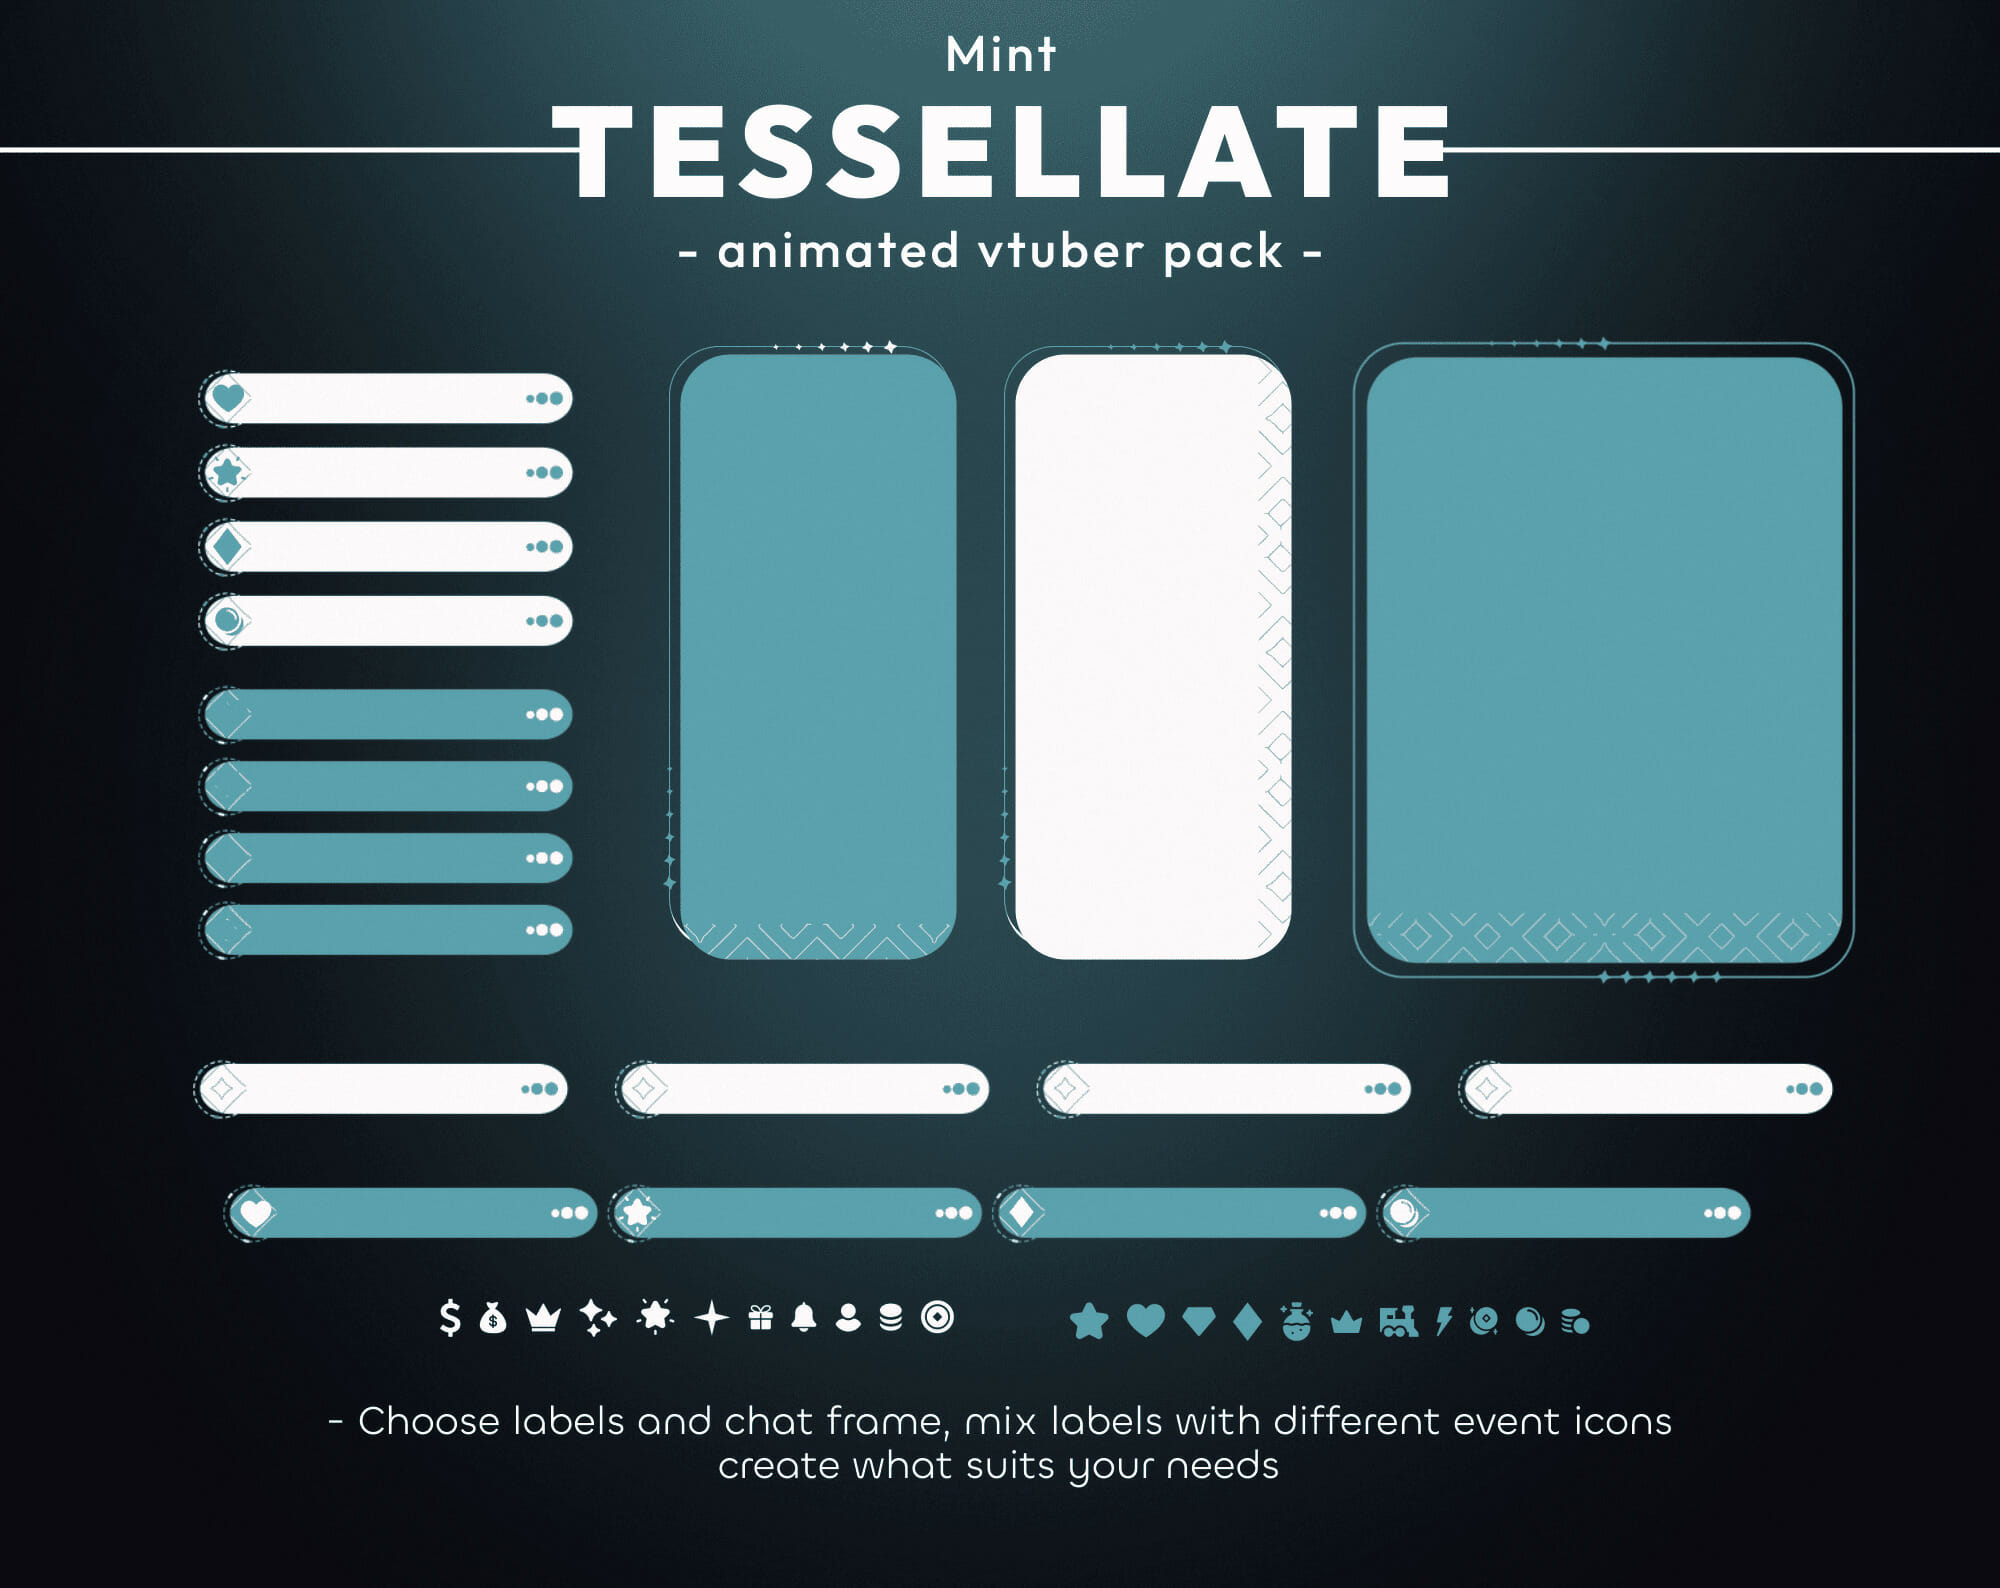 Tessellate Mint Vtuber Stream Pack 2